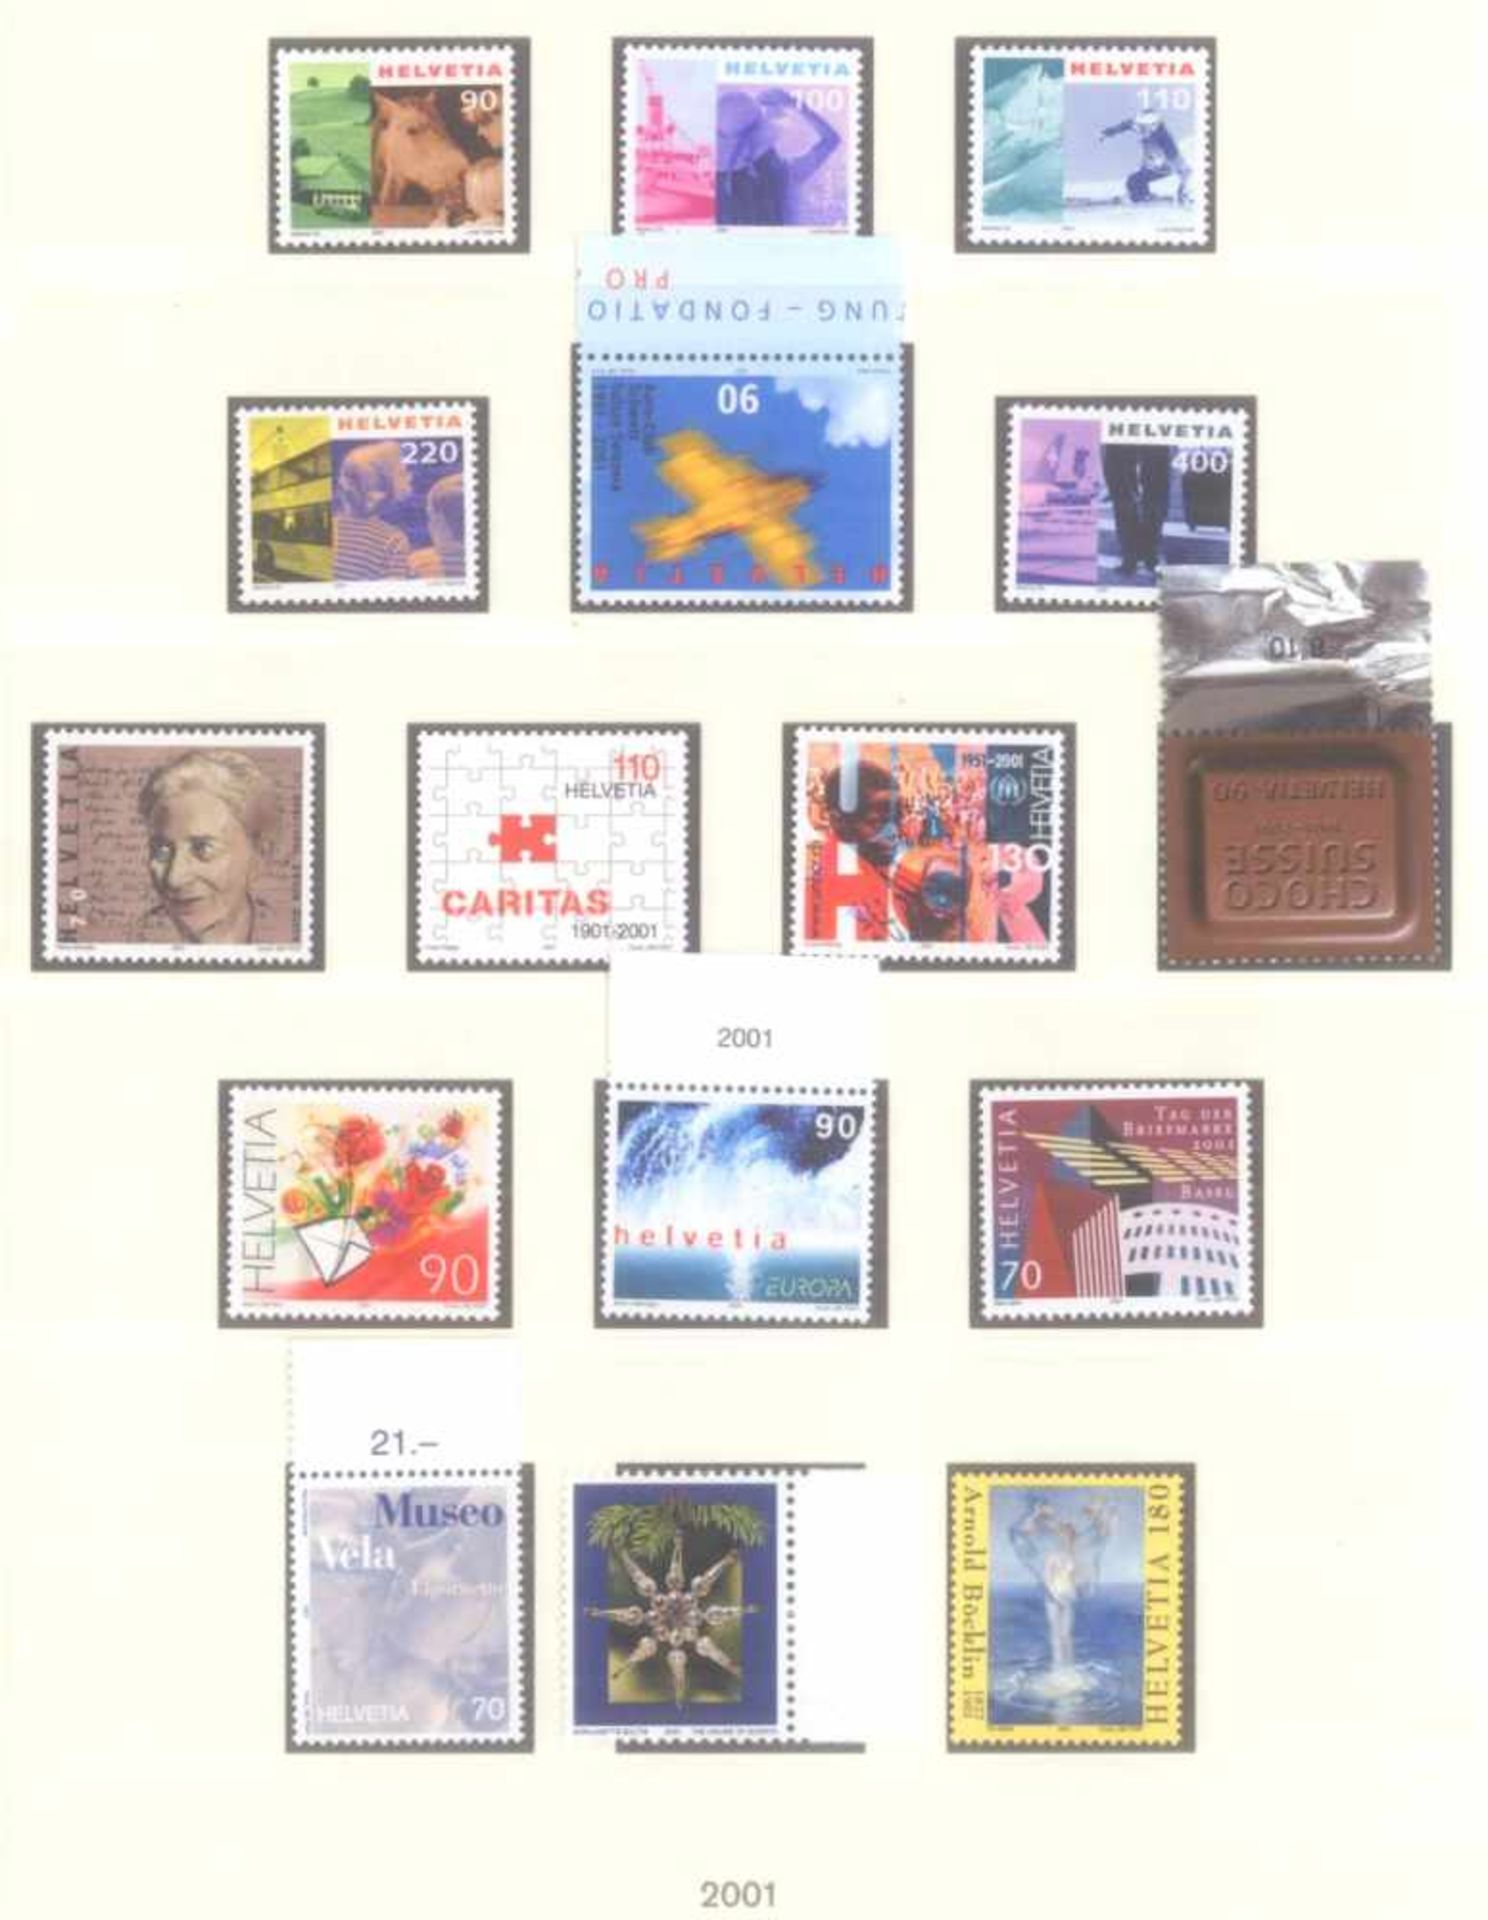 SCHWEIZ 1991-2003; mit 416,- SCHWEIZER FRANKEN NOMINALE!postfrische, komplette Sammlung - nach den - Bild 7 aus 8